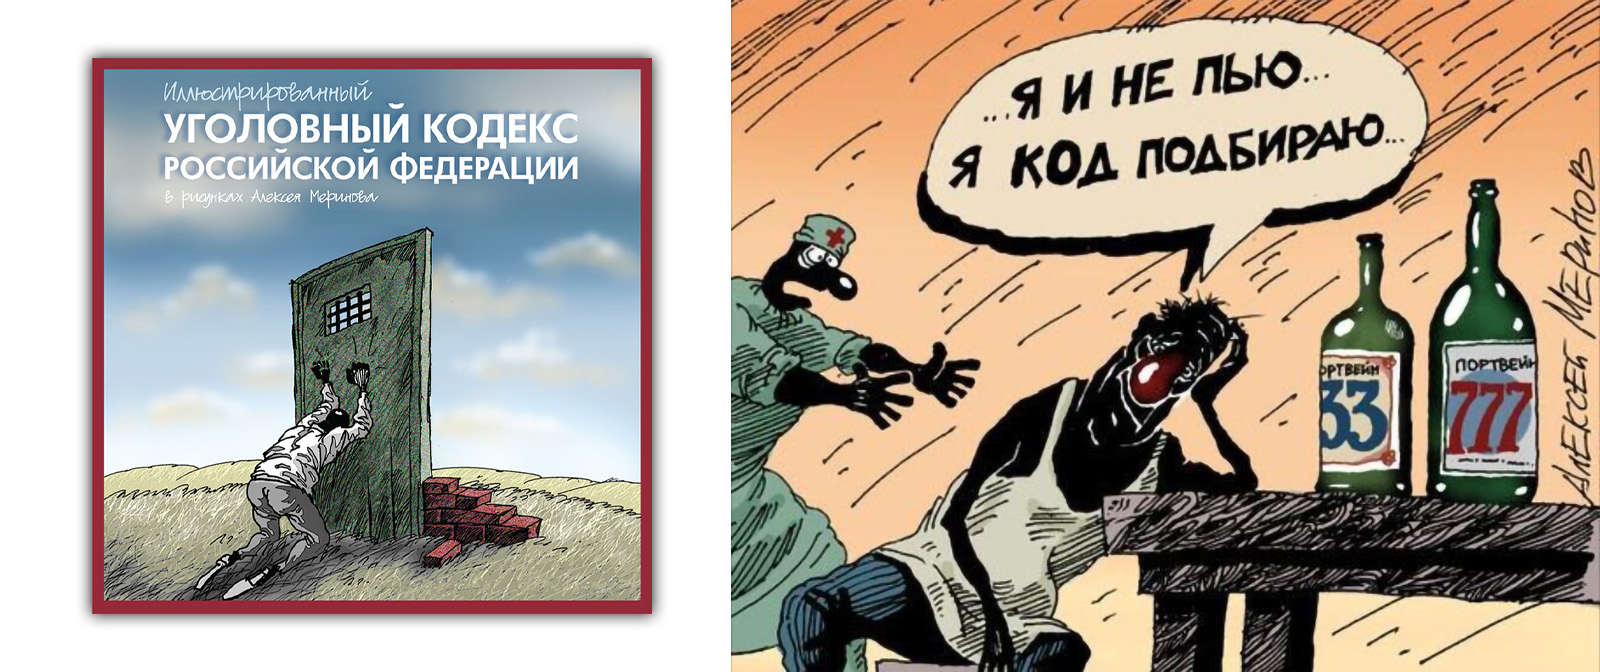 Наша действительность в ироничных и злых карикатурах Алексея Меринова.